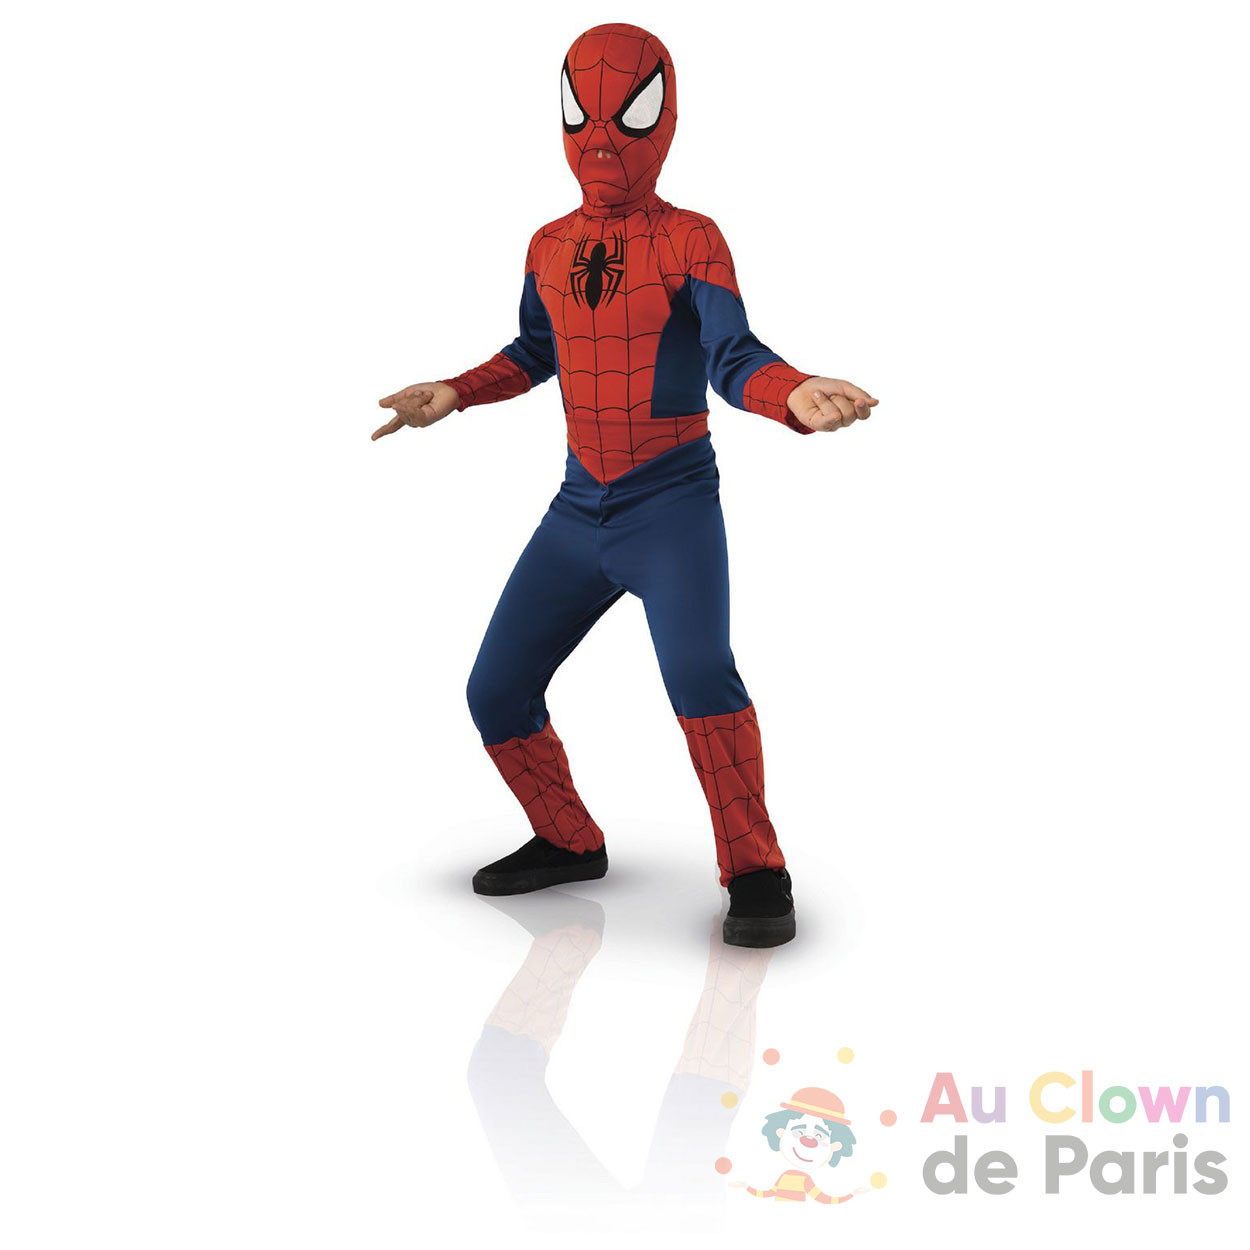 https://au-clown-de-paris.fr/wp-content/uploads/2022/05/deguisement-spiderman-enfant-.jpg